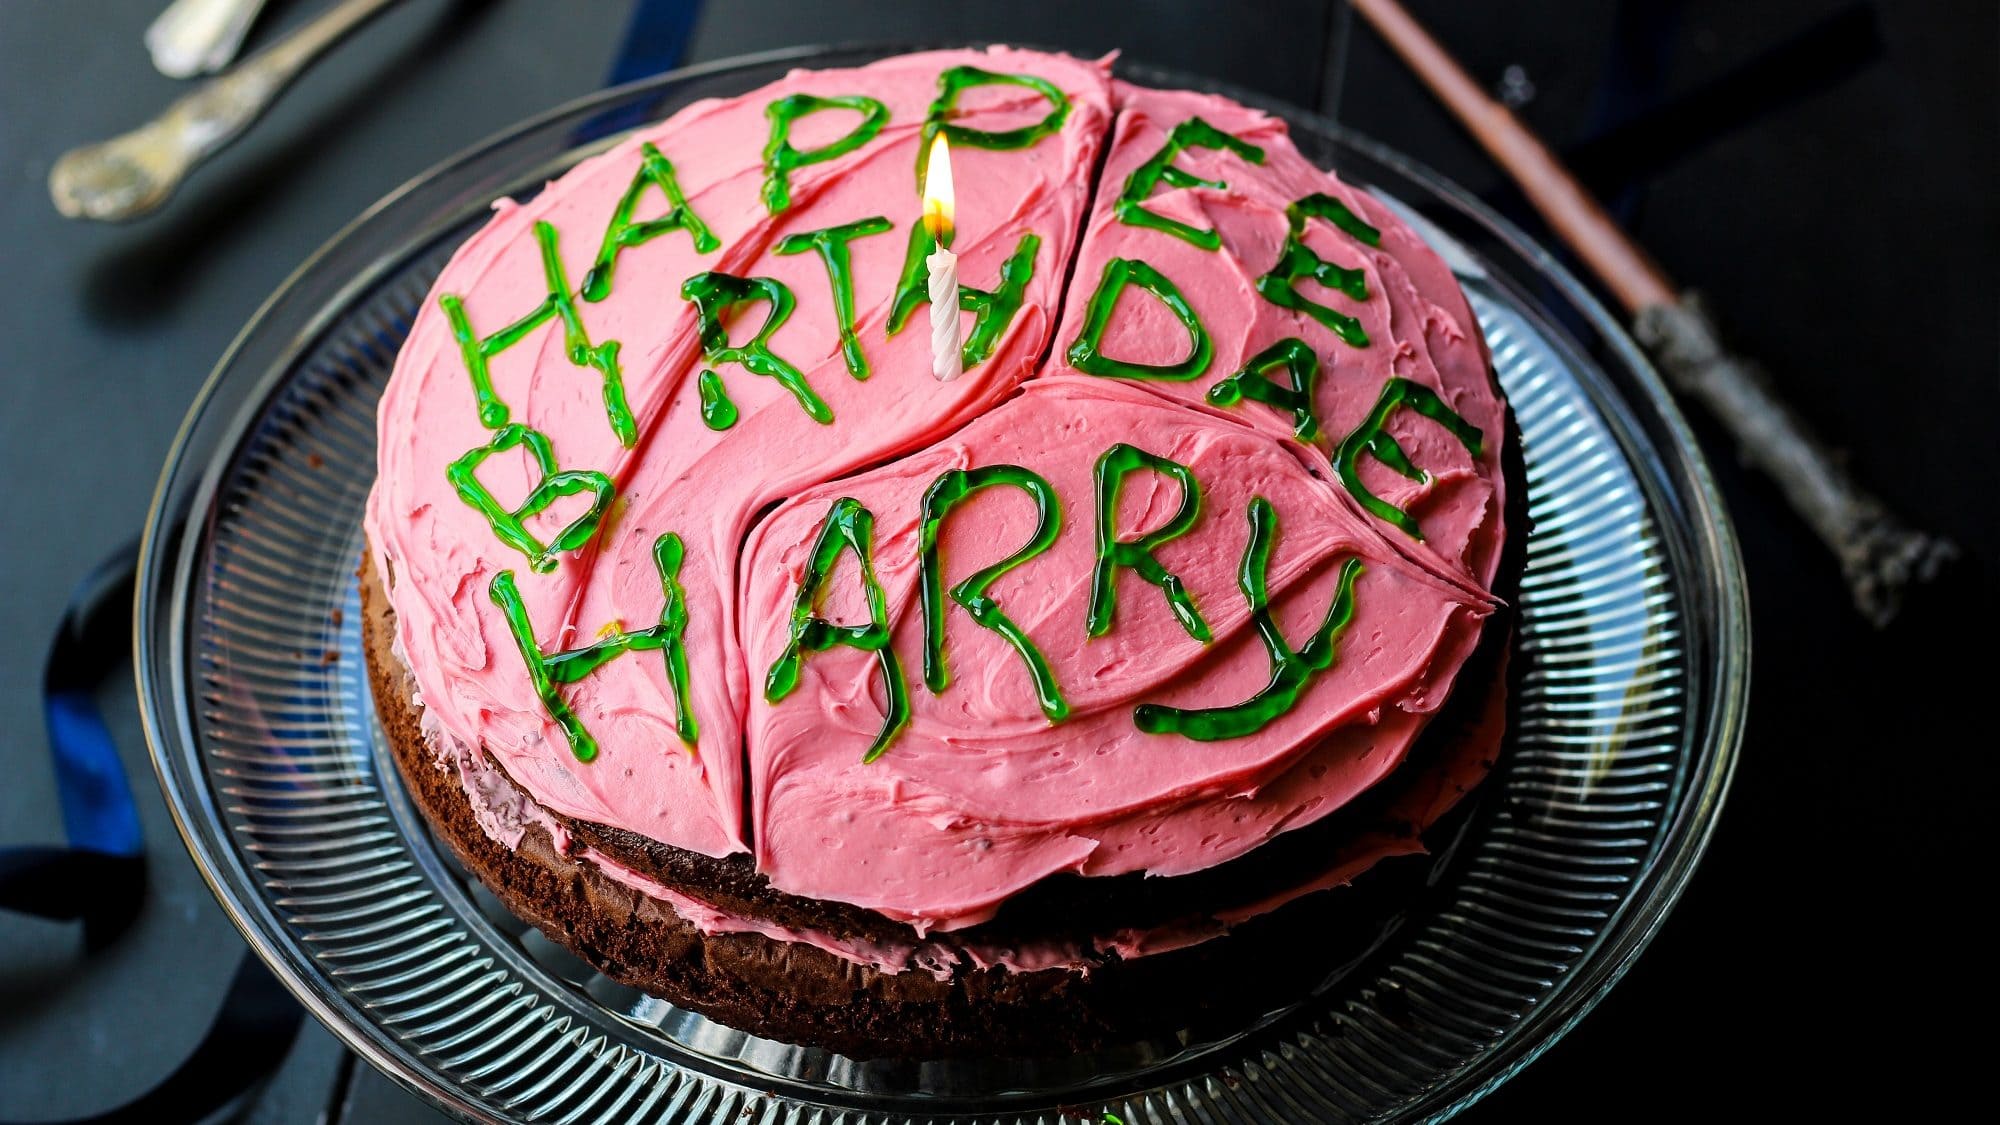 Harry Potters Geburtstagskuchen mit Schokoteig, pinker Buttercreme und grüner Zuckerschrift auf einem Glasteller auf einem schwarzen Tisch. Im Hintergrund liegt ein Zauberstab.